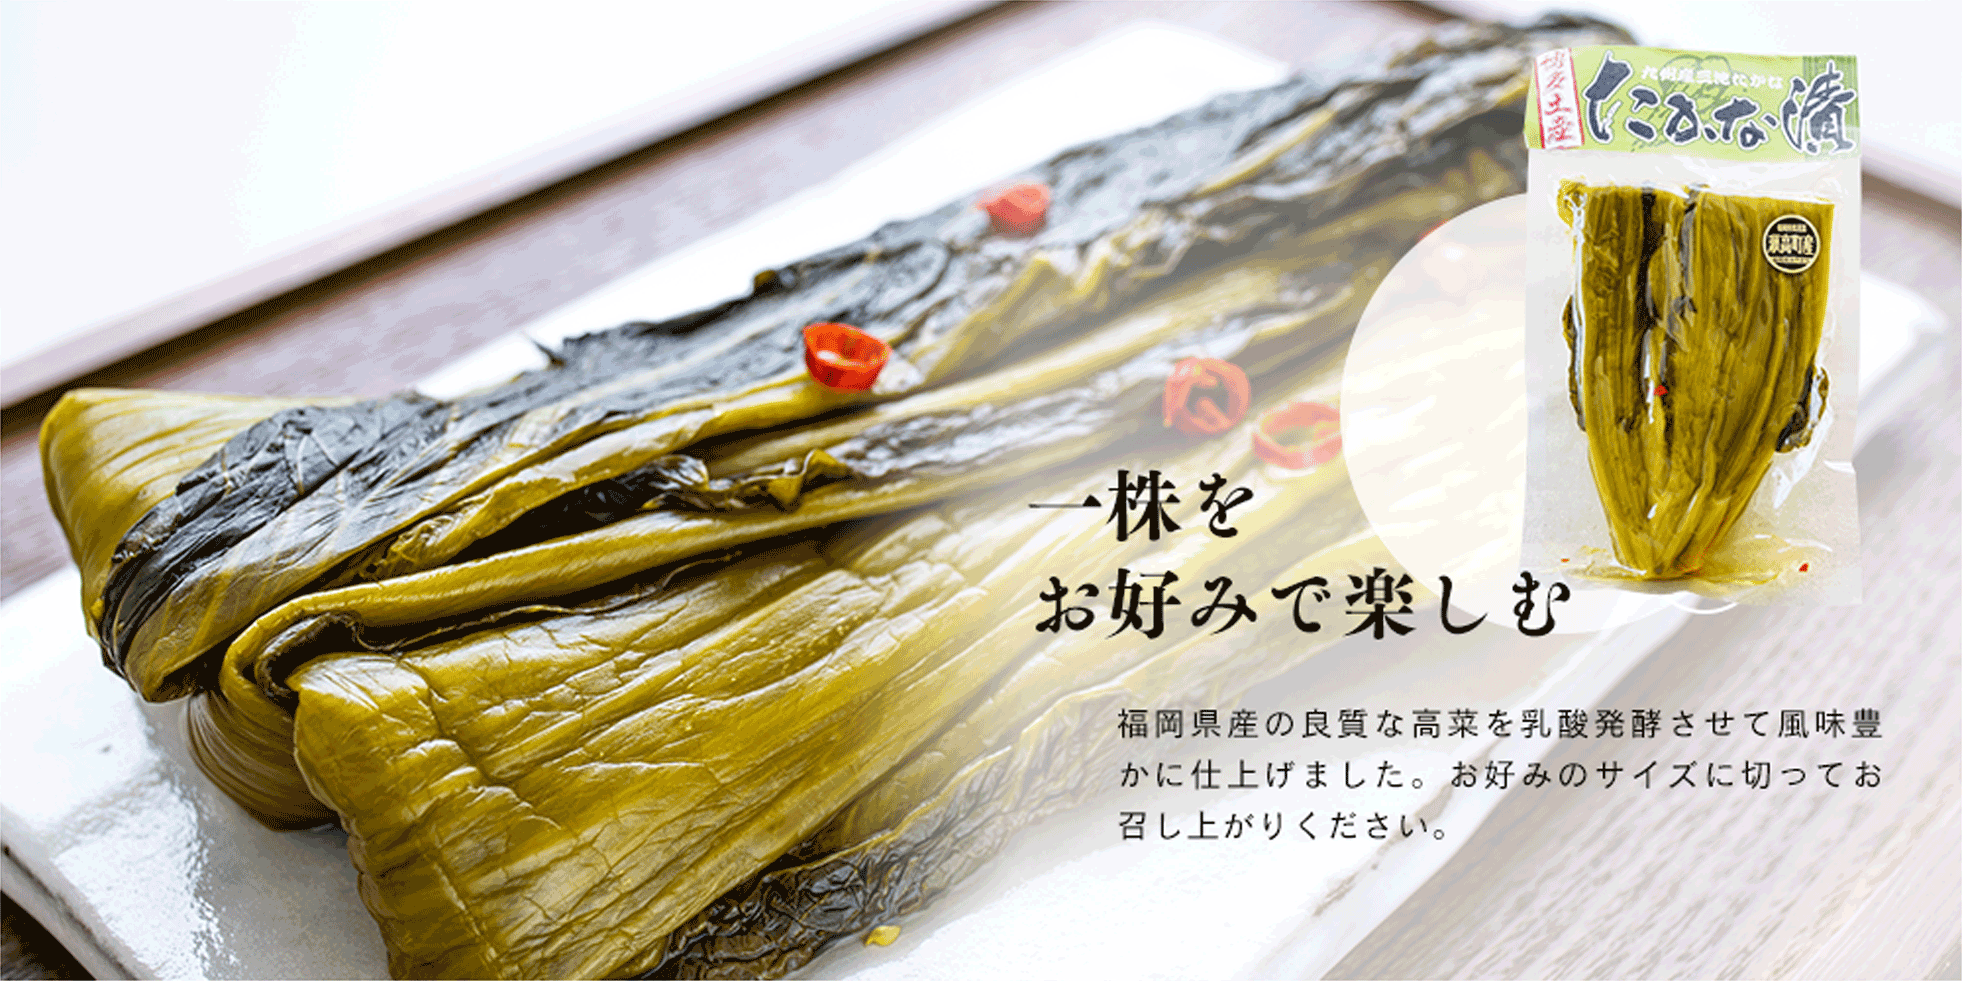 一株を お好みで楽しむ 福岡県産の良質な高菜を乳酸発酵させて風味豊かに仕上げました。お好みのサイズに切ってお召し上がりください。